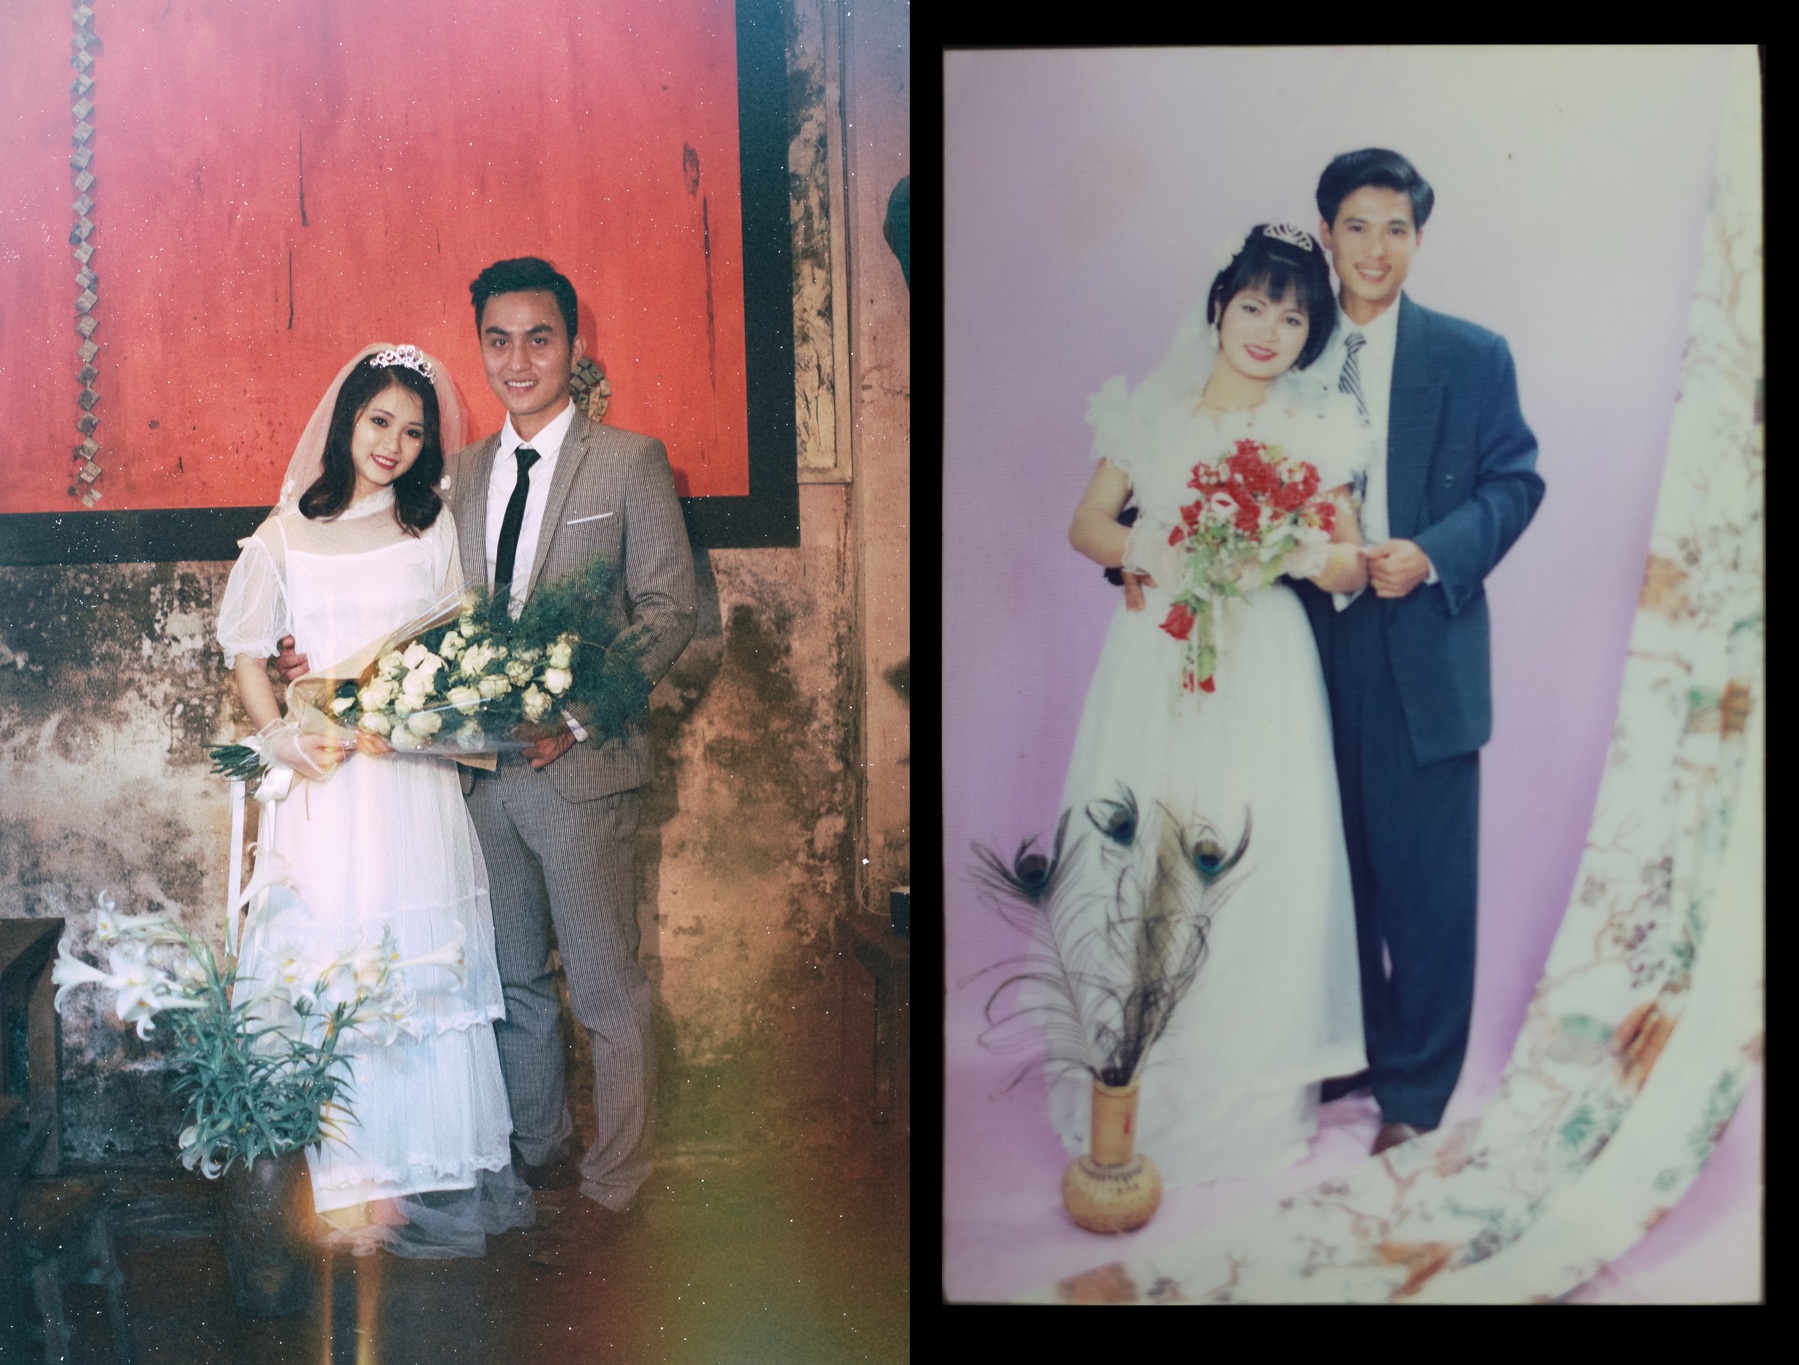 Hình cưới 9X trong phong cách hoài cổ Hà Nội sẽ đưa chúng ta trở lại thời kỳ yên bình và lãng mạn. Việc ngắm nhìn những bức ảnh này sẽ khiến chúng ta thấy hạnh phúc thật sự đơn giản và ngọt ngào.